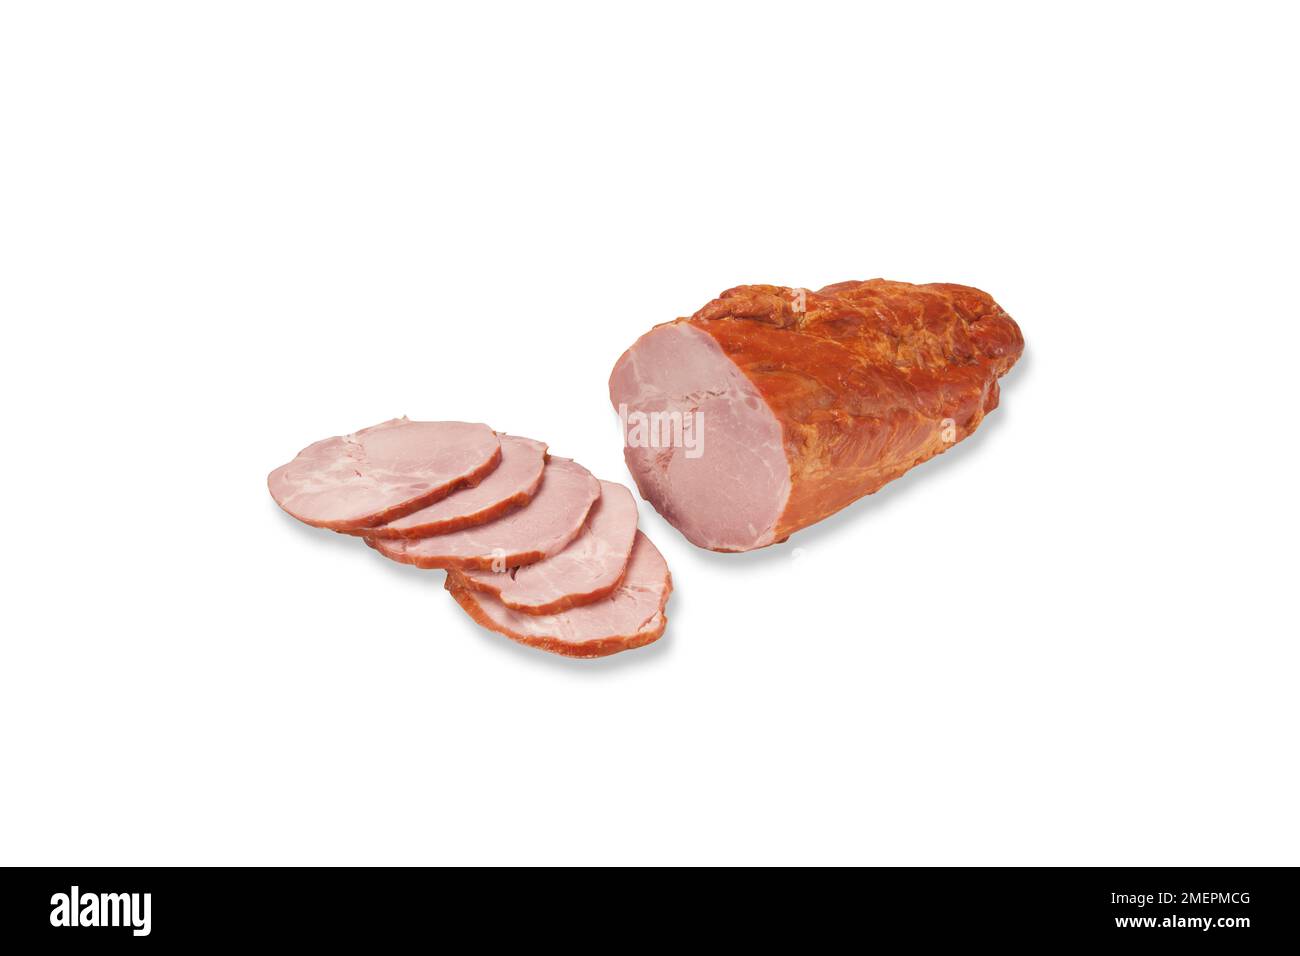 Affettato Baleron, polacca salsiccia di maiale cotto fatto premendo grandi pezzi di collare di maiale in una pelle che è poi affumicato e cotto Foto Stock